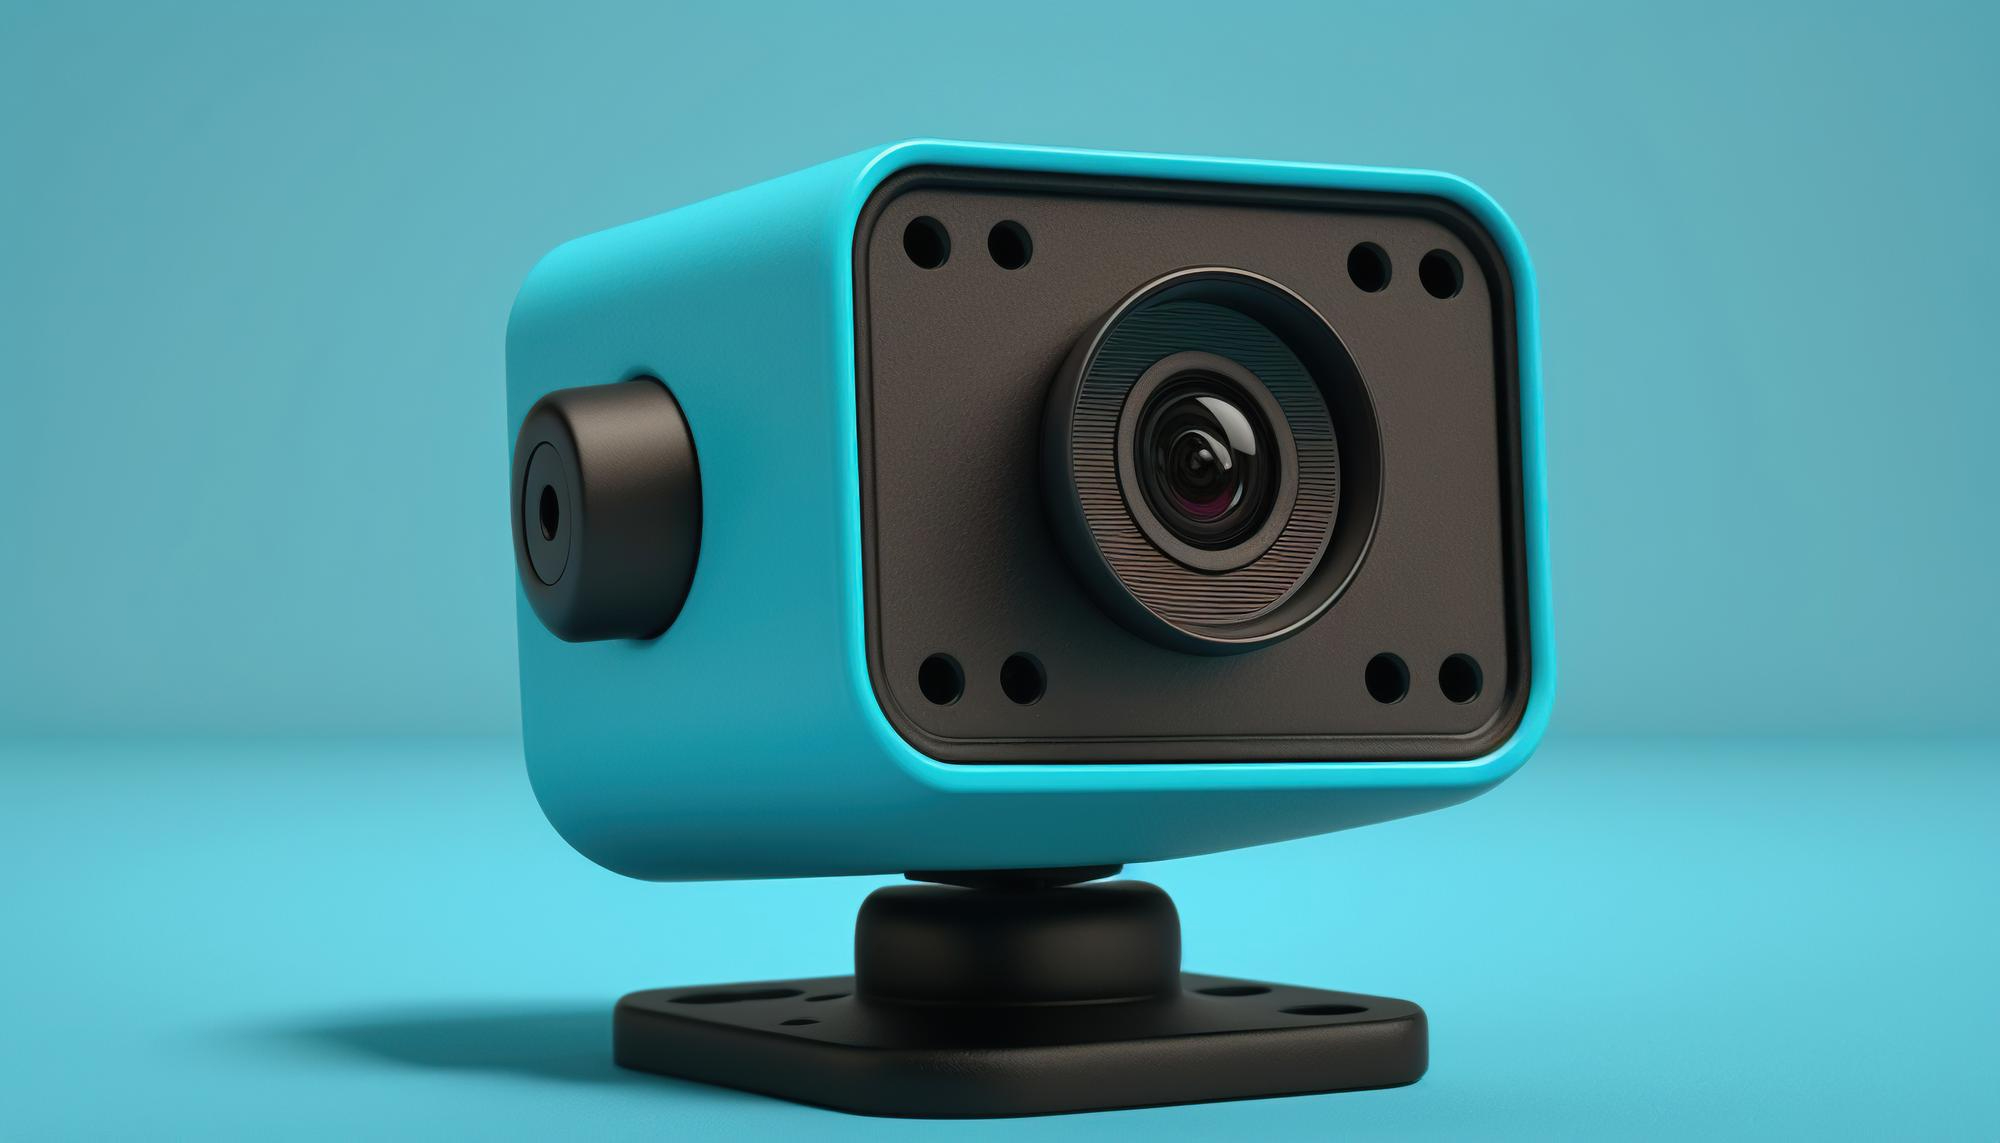 Test kamery internetowej – jak sprawdzić, czy kamerka działa?